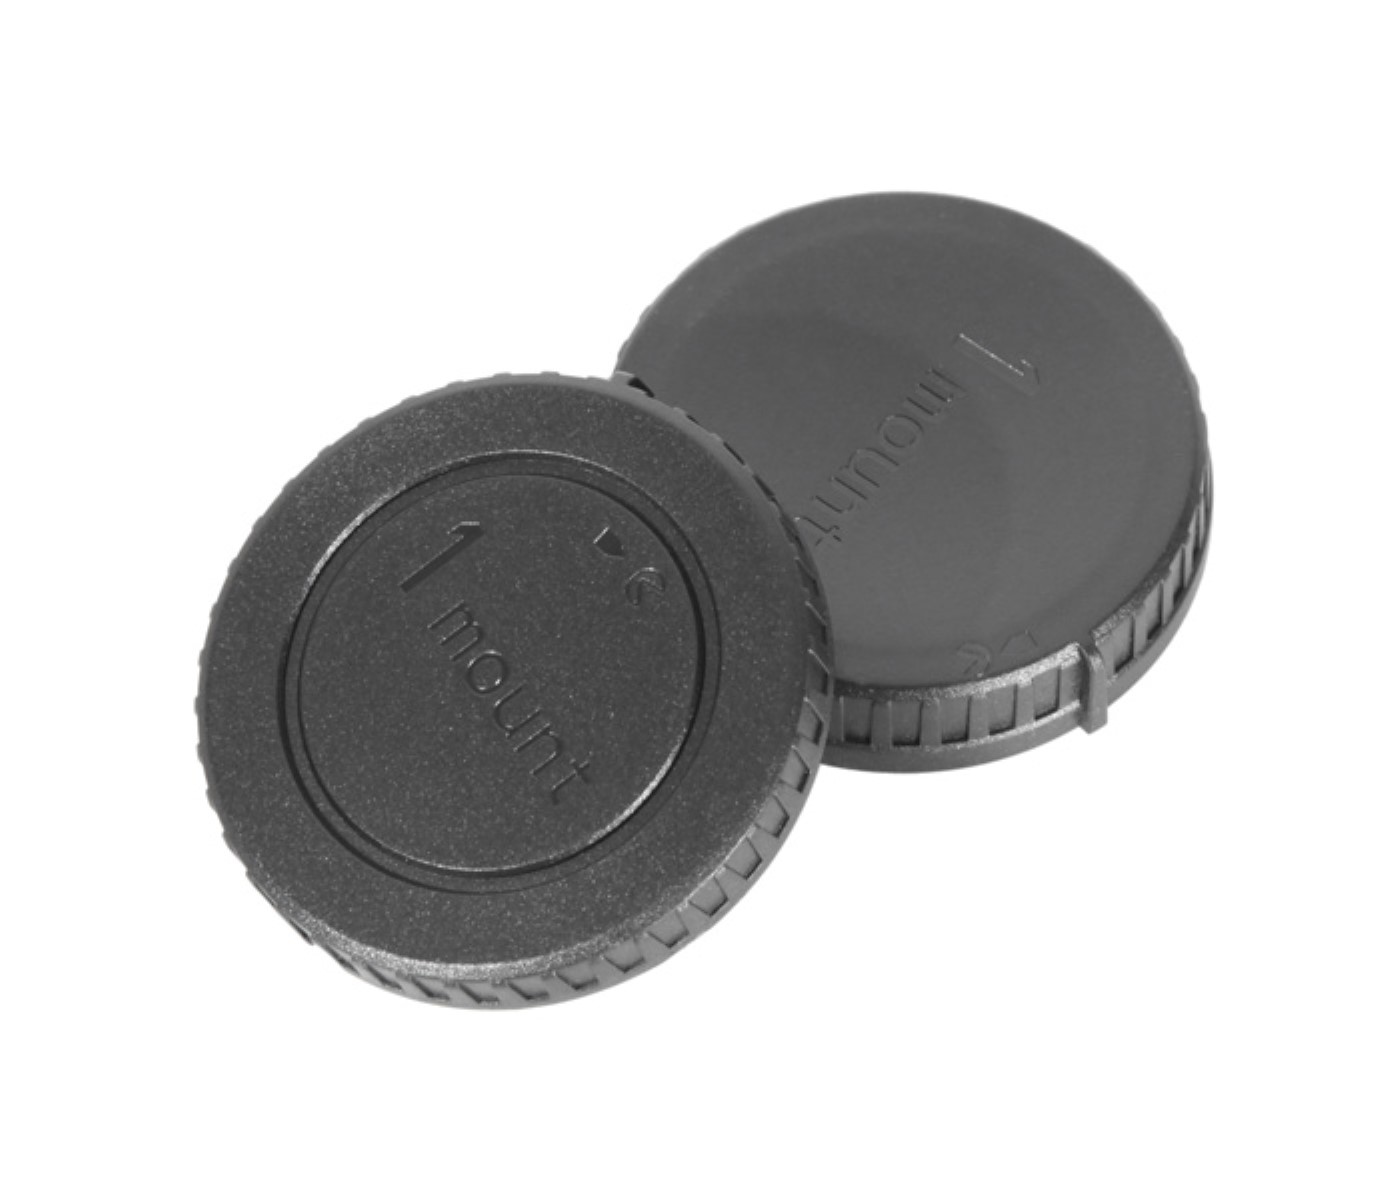 Objektivdeckel, Rückdeckel und Gehäusedeckel für Nikon 1 Kameras